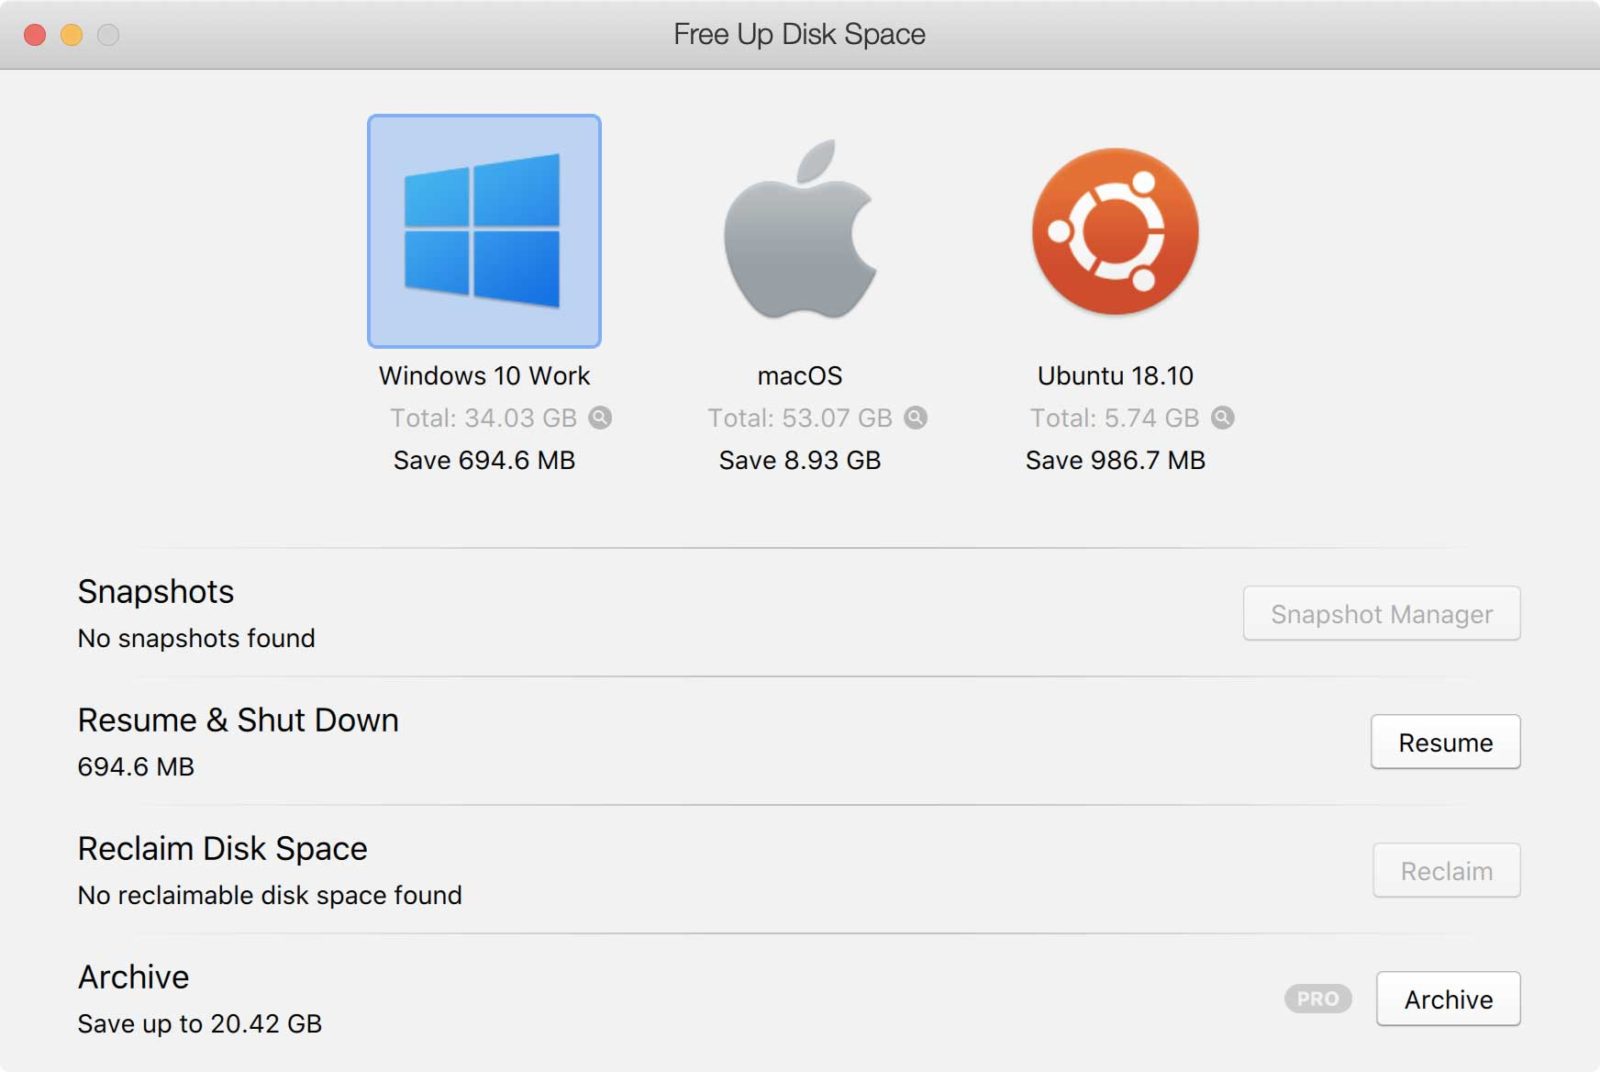 La nuova finestra di dialogo Free Up Disk Spac suggerisce azioni per liberare lo spazio di archiviazione.